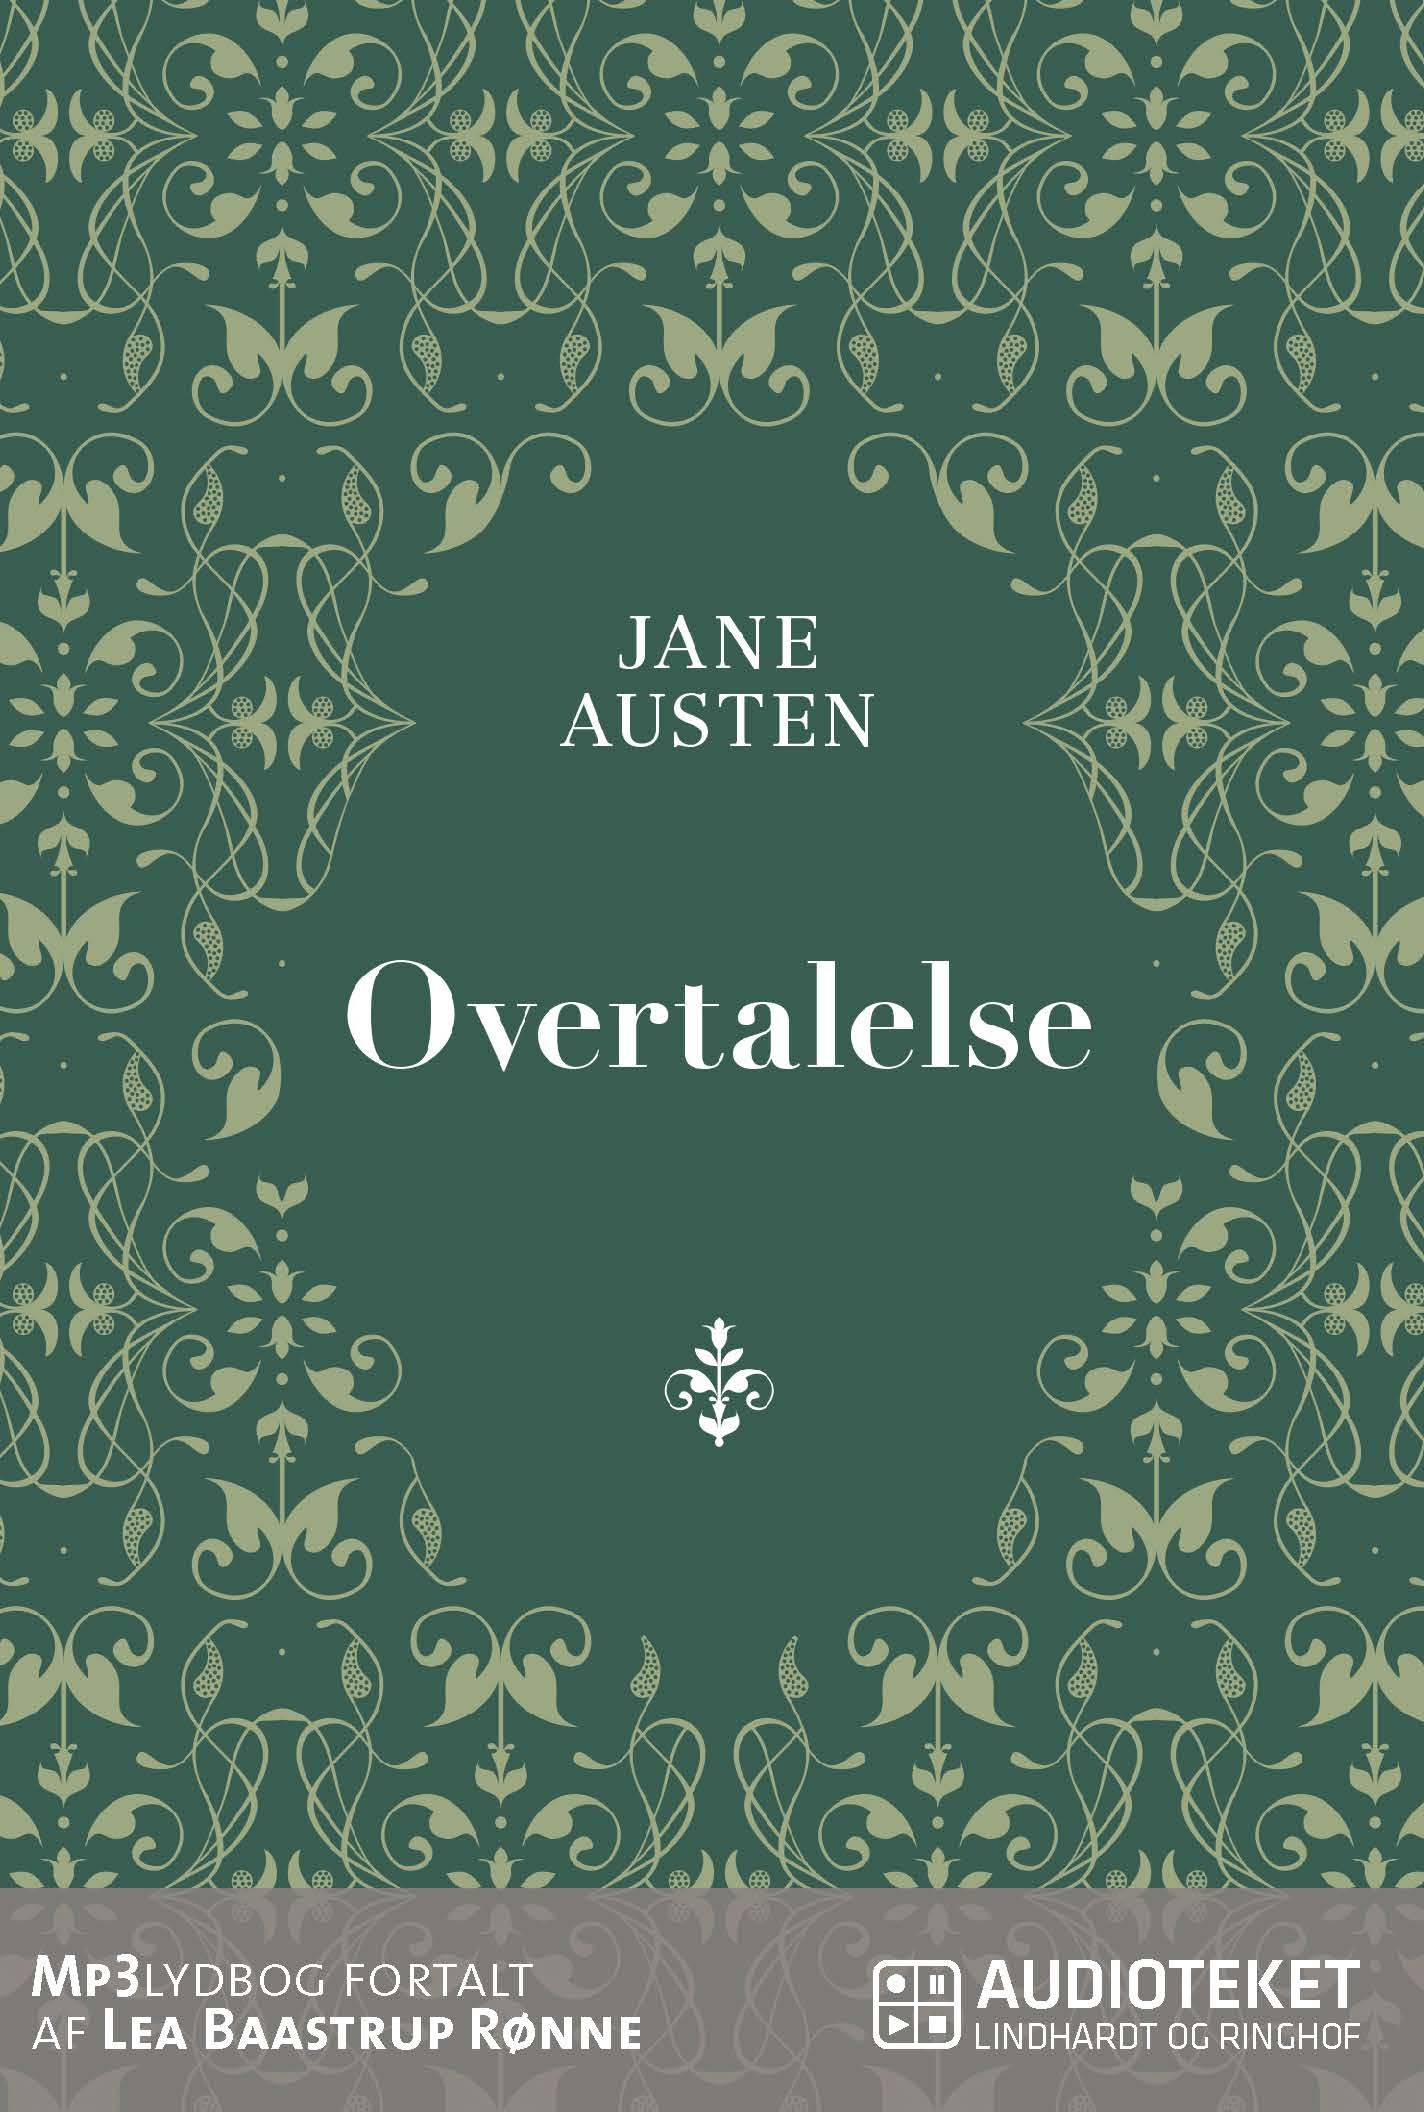 Overtalelse, ljudbok av Jane Austen